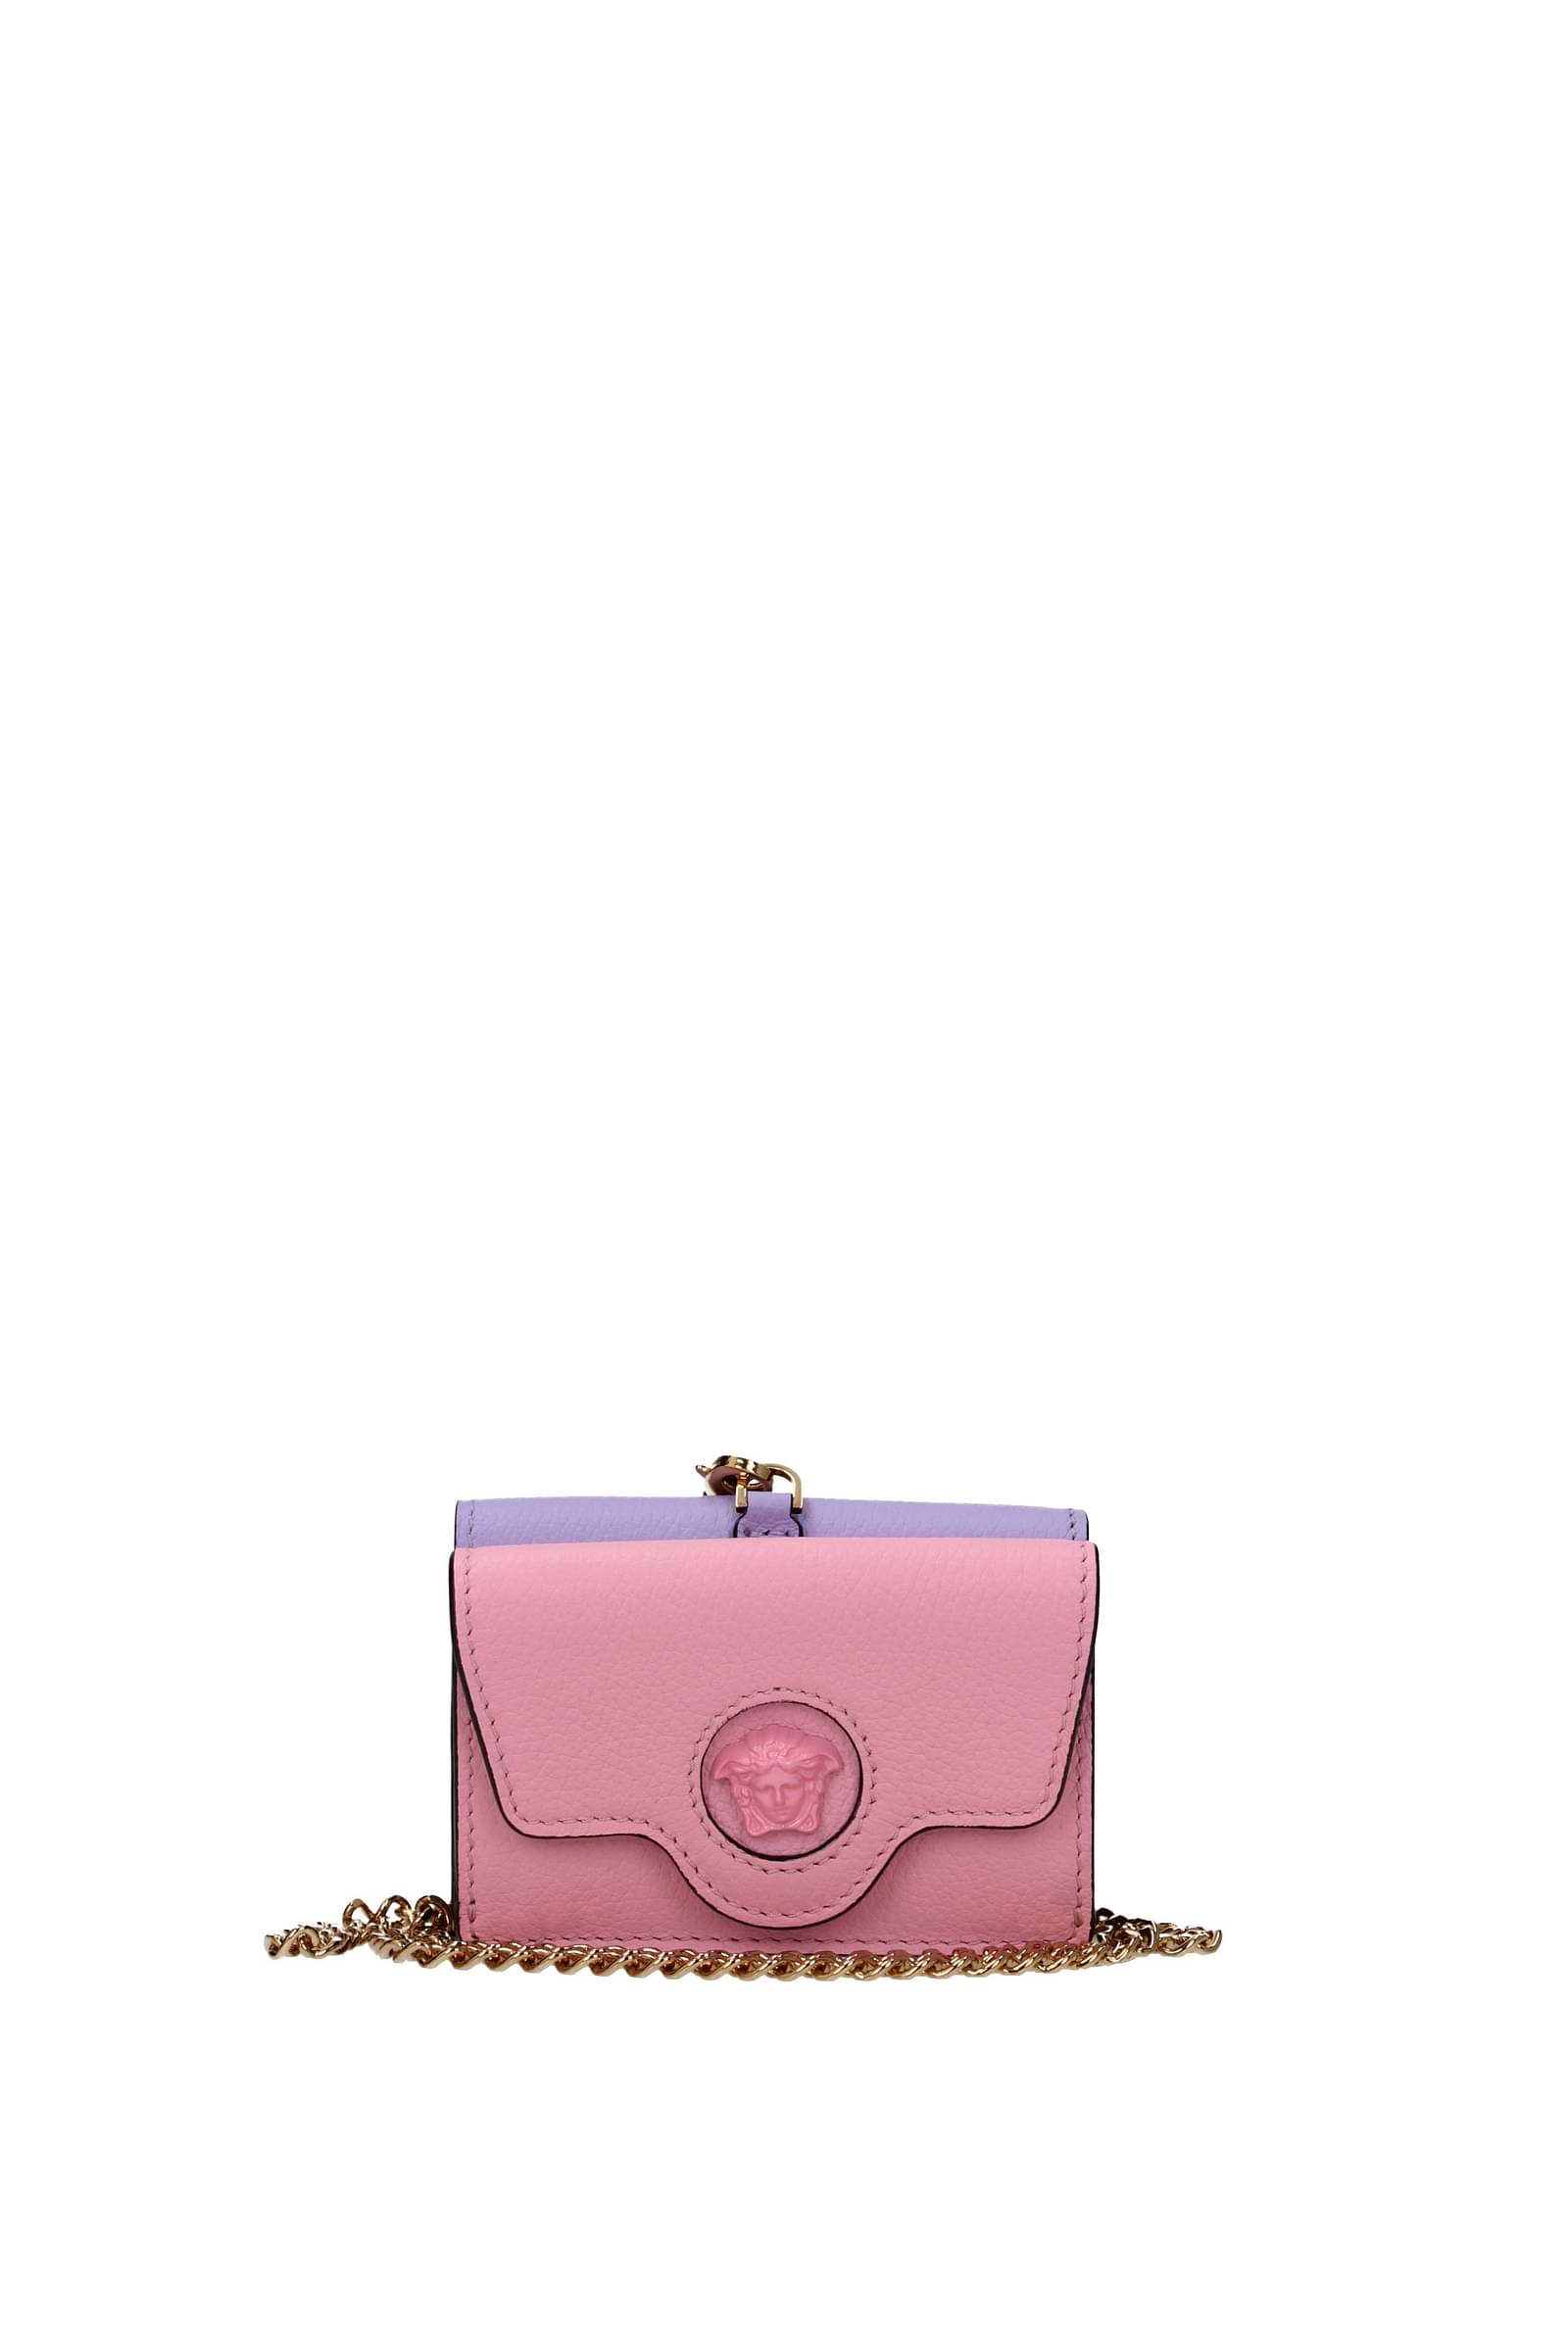 VERSACE: Handbag woman - Pink | VERSACE handbag 10030161A06487 online at  GIGLIO.COM